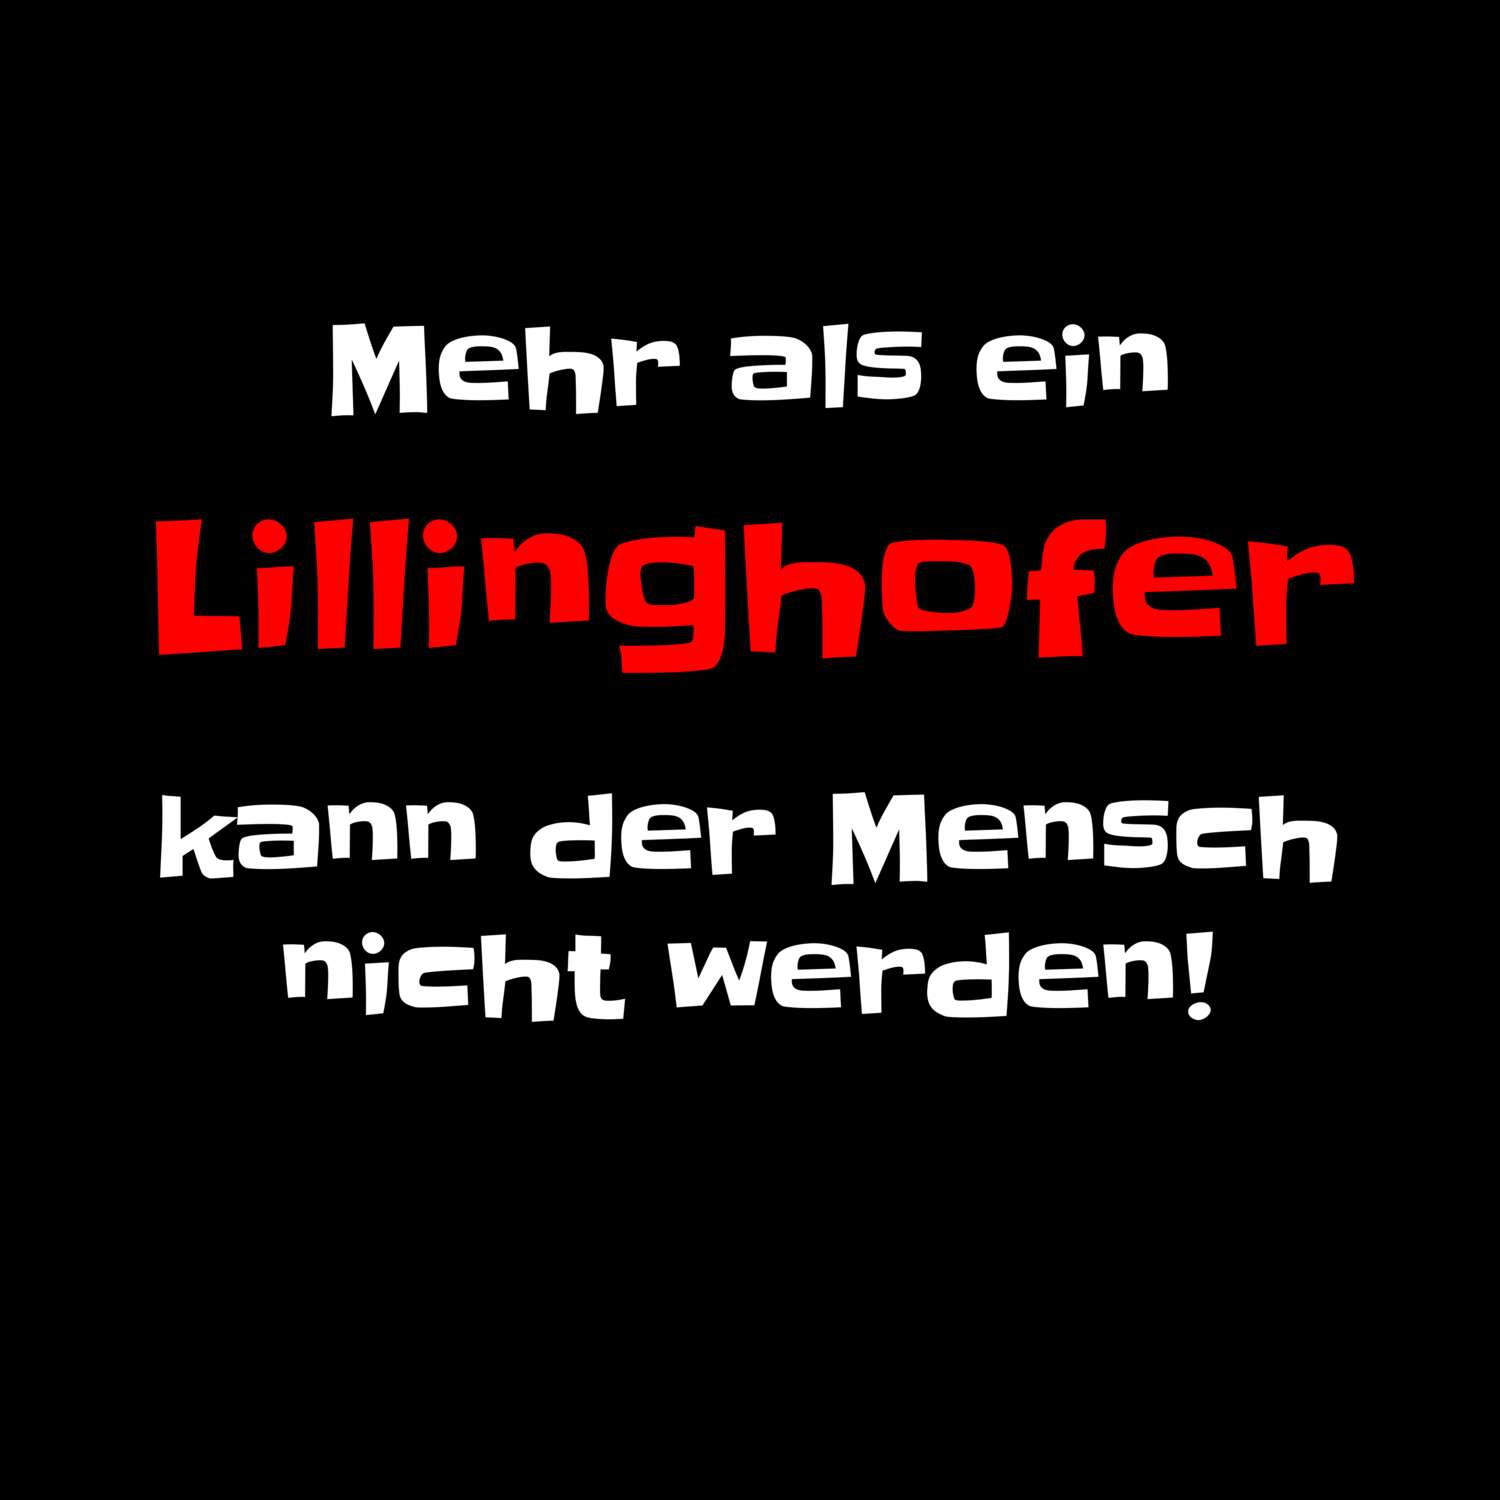 Lillinghof T-Shirt »Mehr als ein«